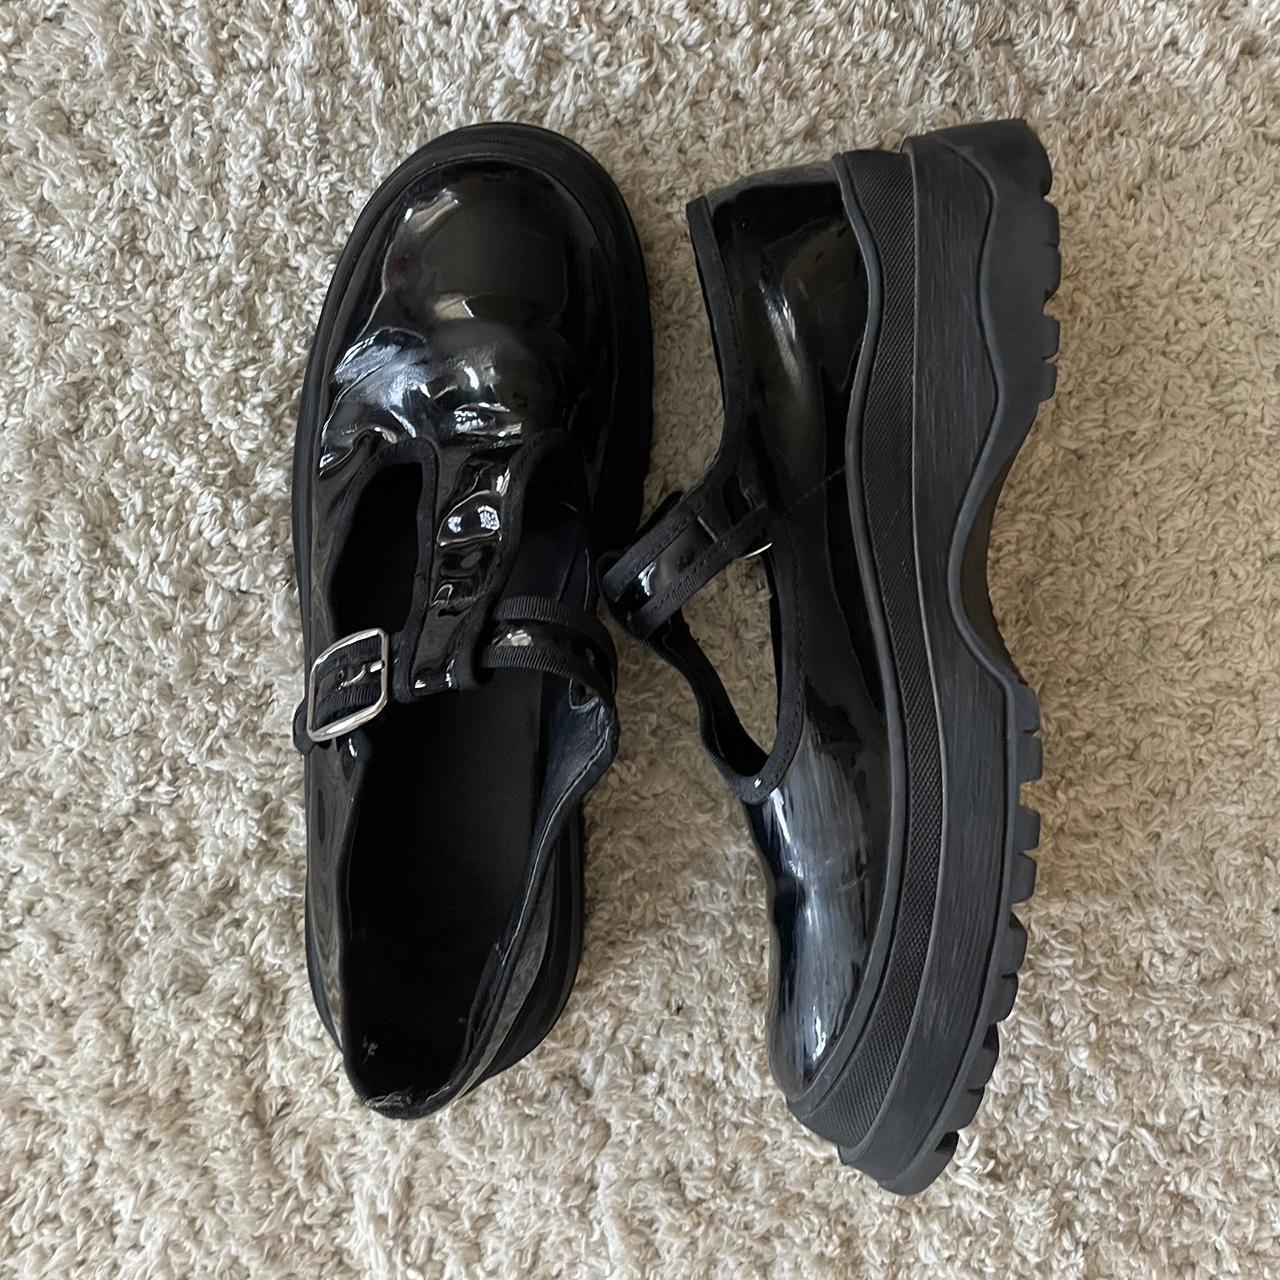 Urban Outfitters Women's Black Footwear | Depop